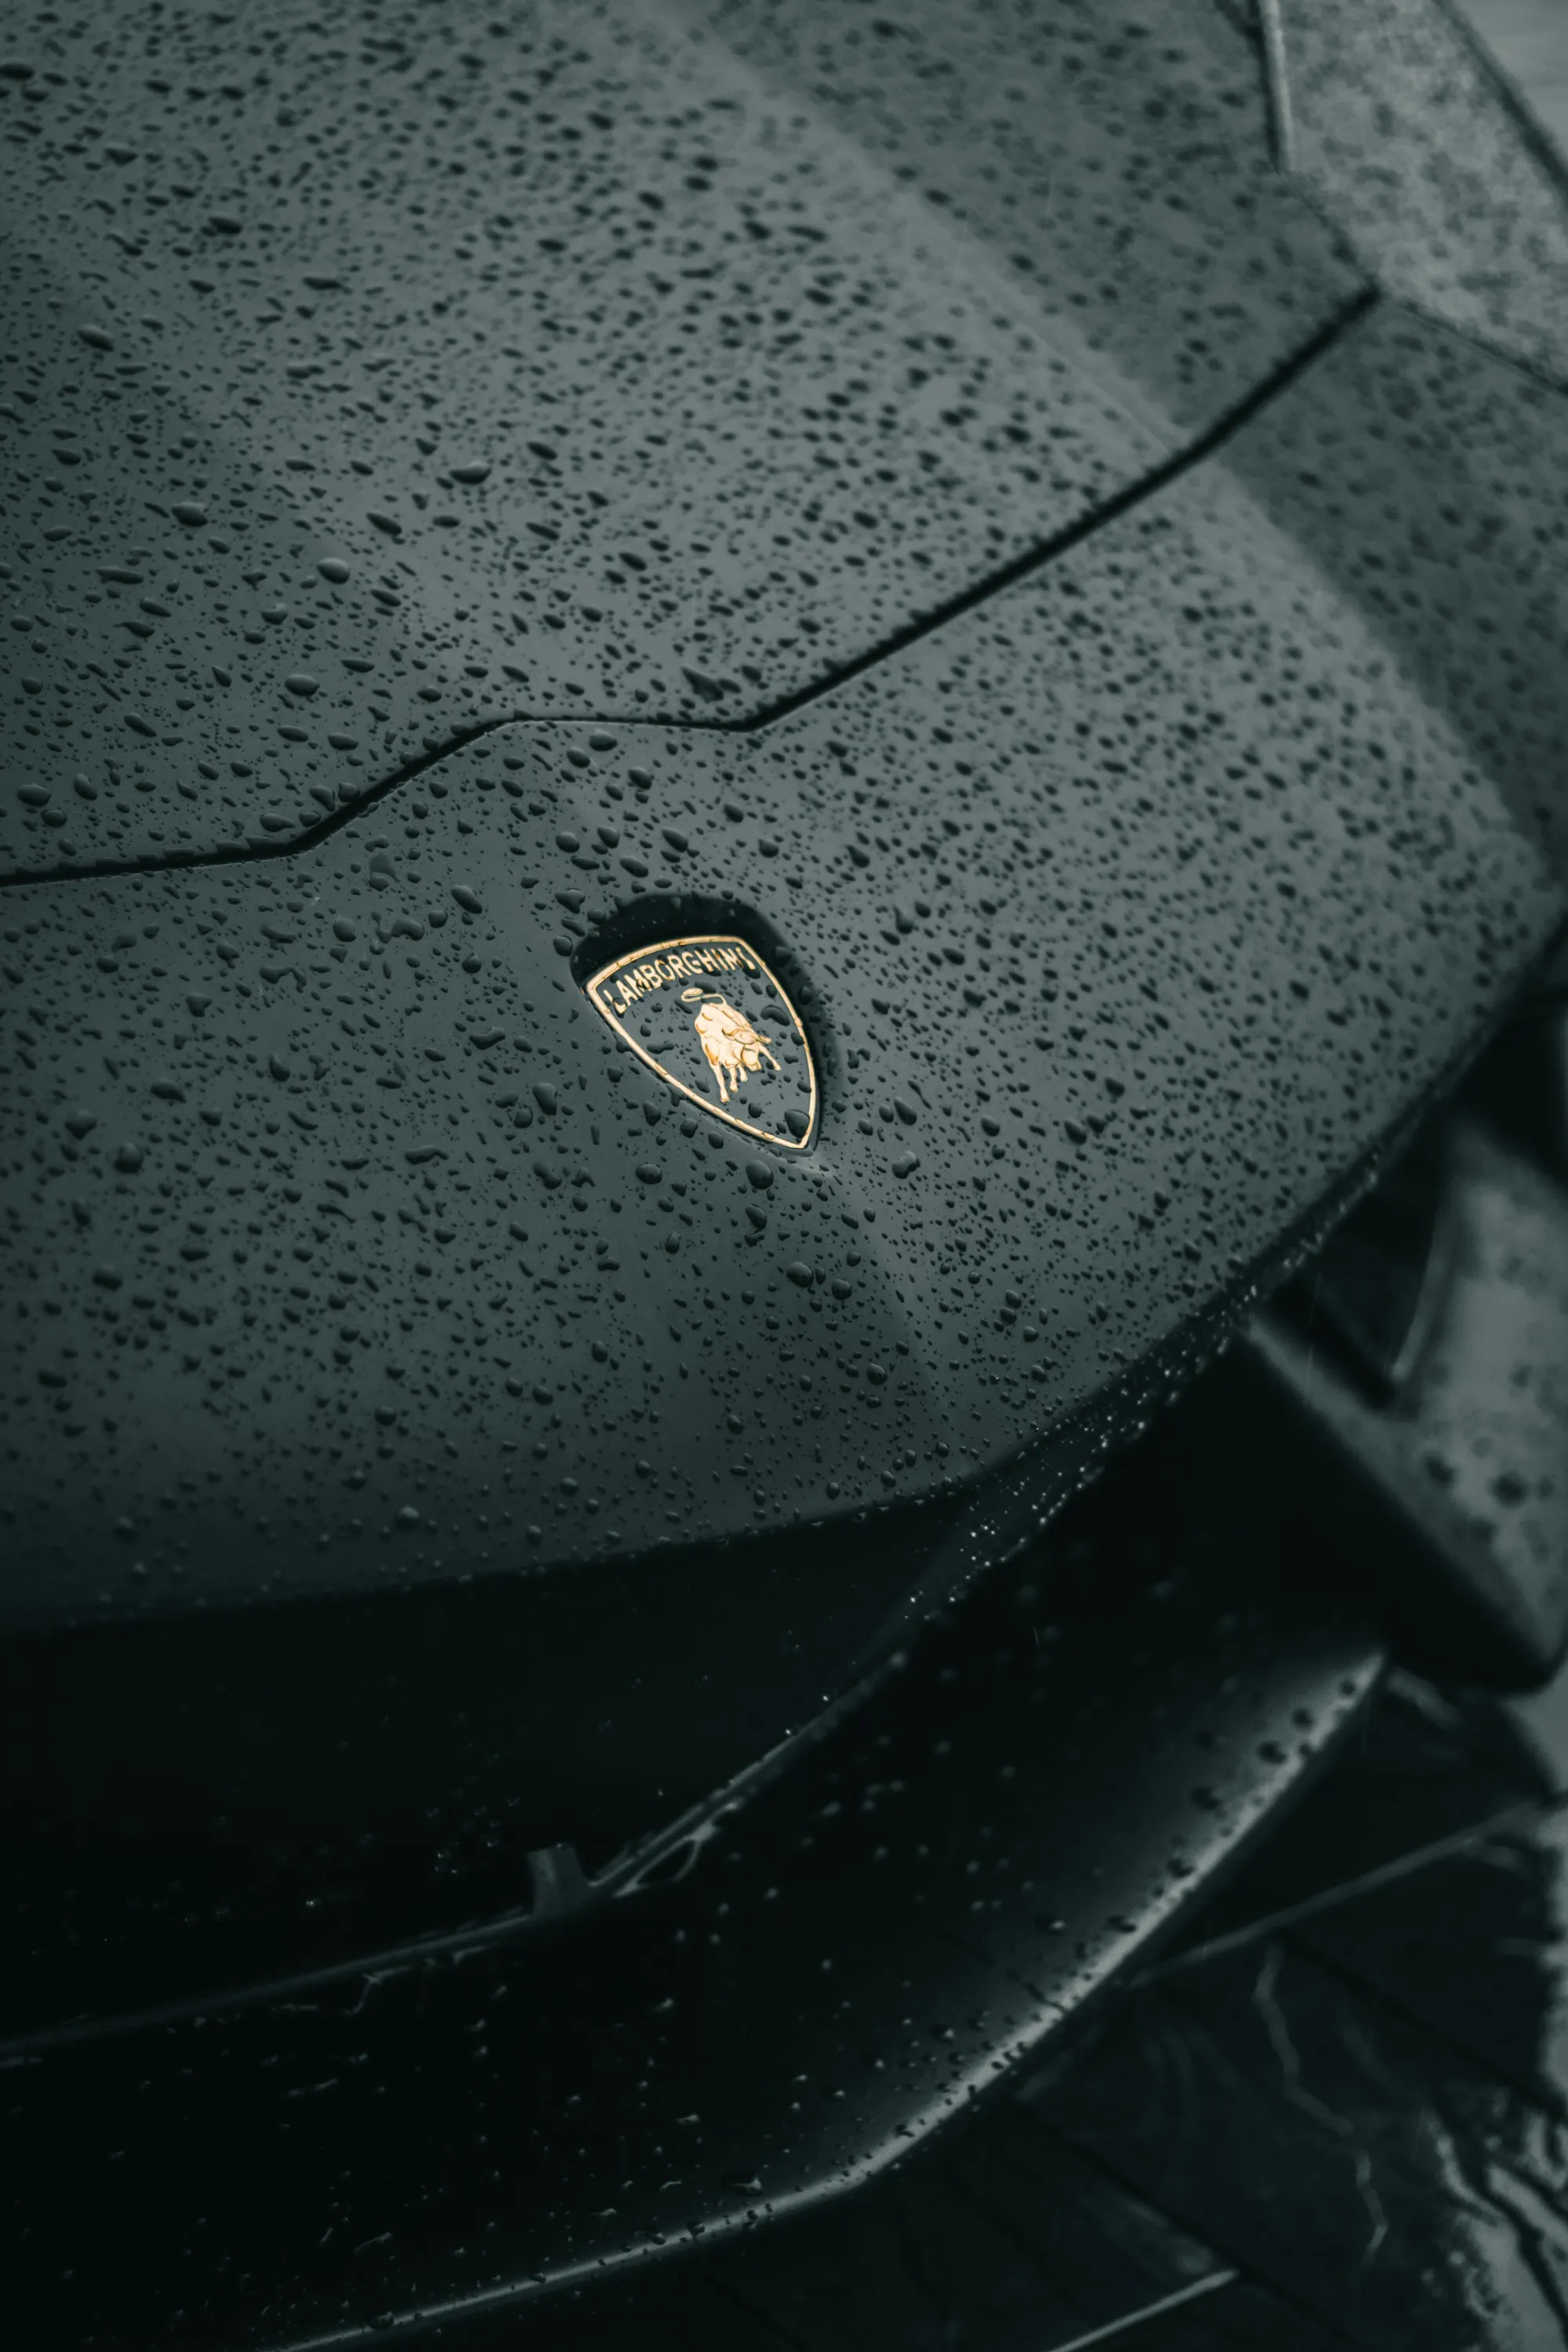 thumb for Lamborghini Image Wallpaper